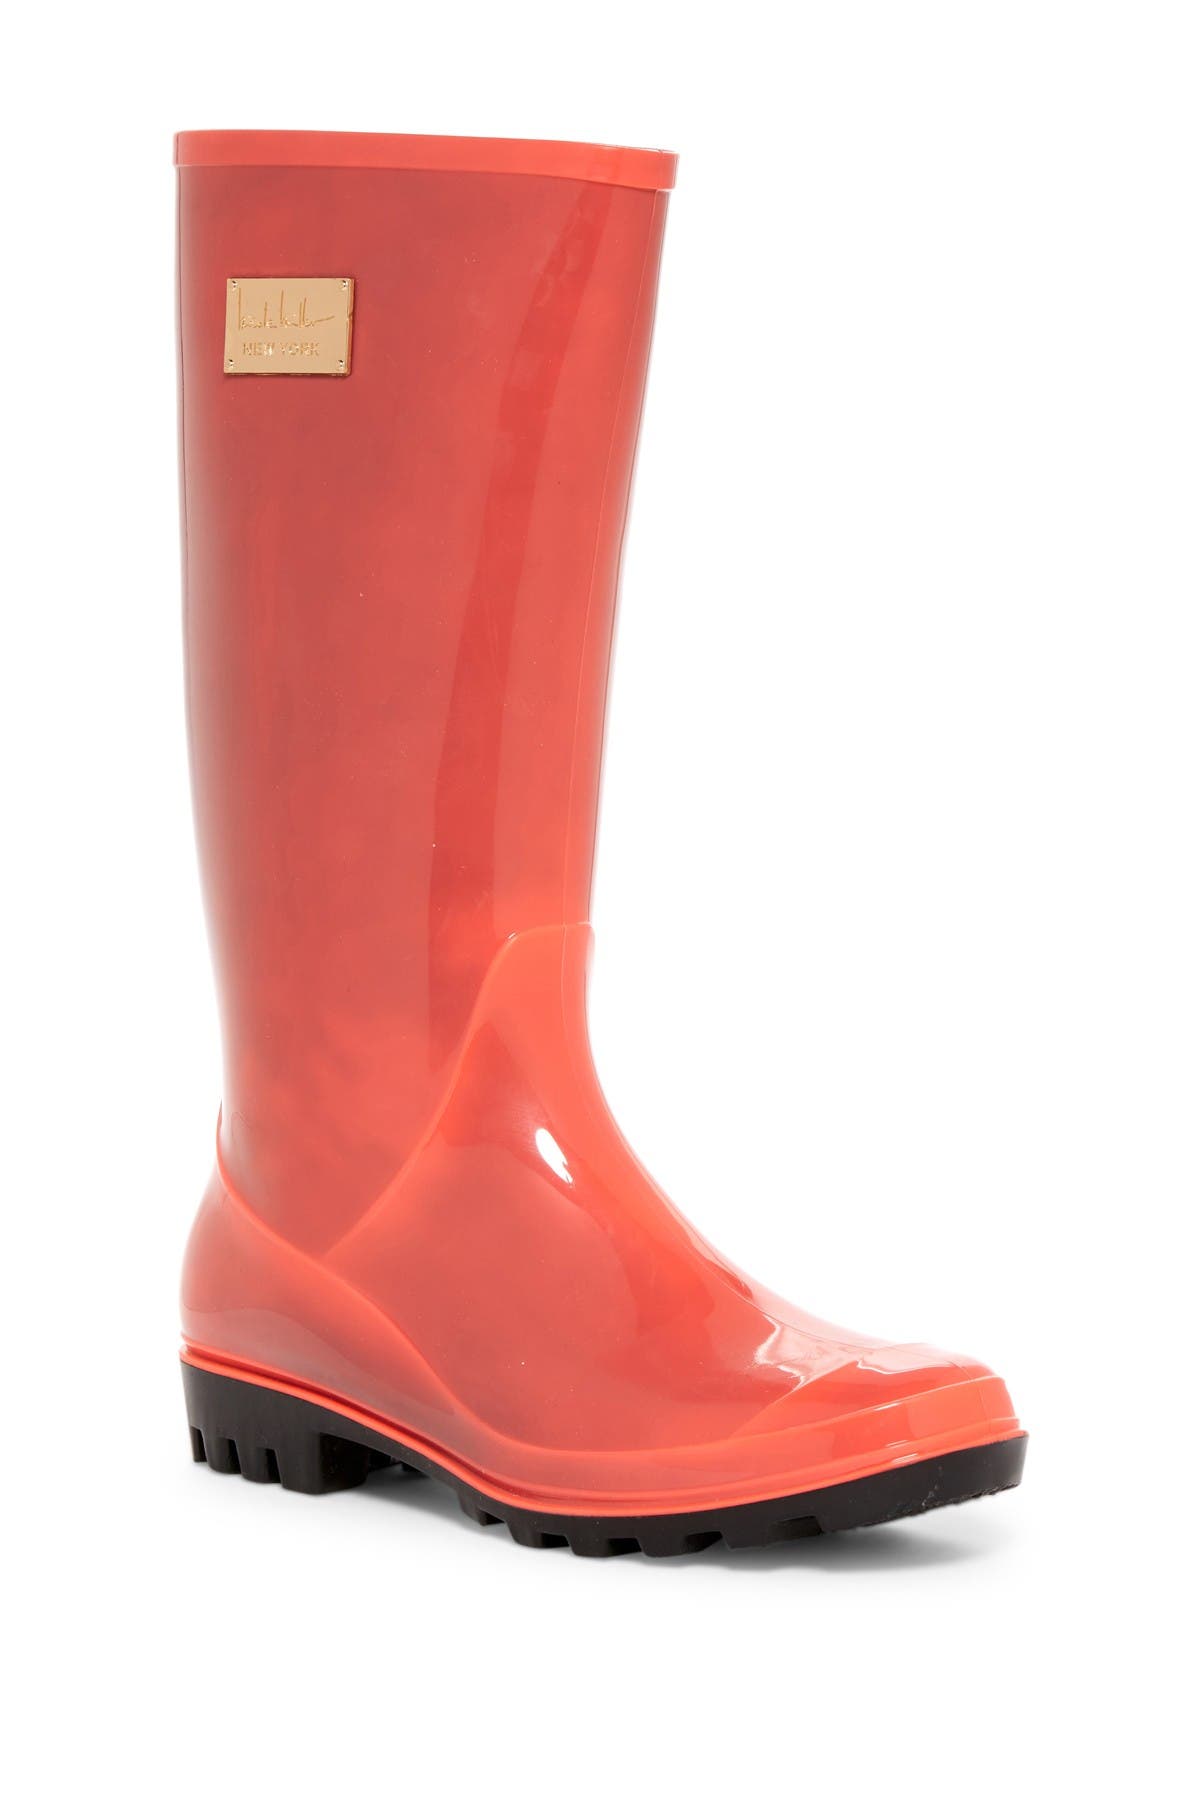 nicole miller rain boots